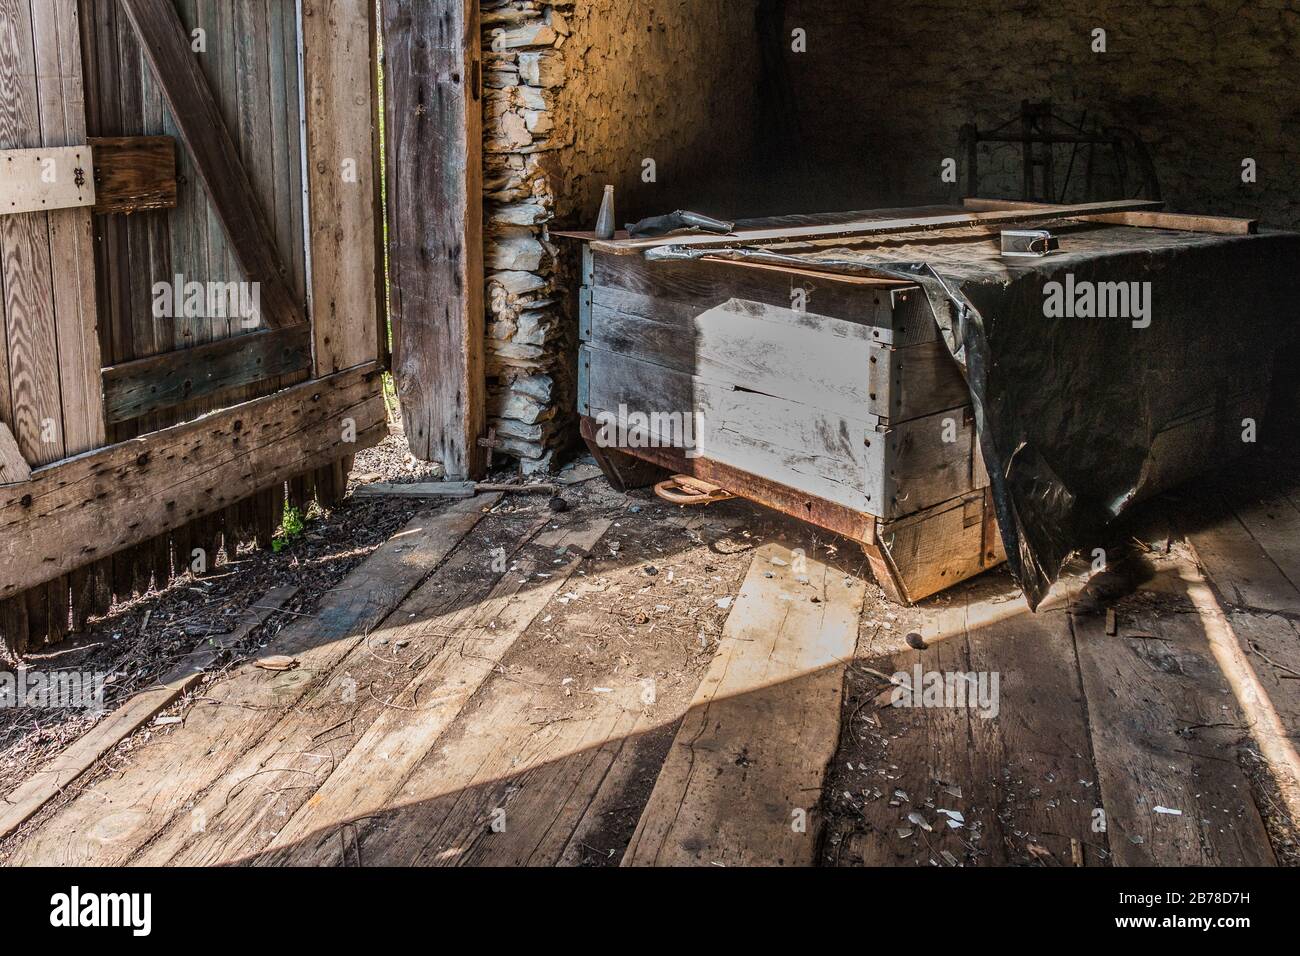 Interno grezzo-cucito di un vecchio fienile in legno nella Pennsylvania orientale con attrezzi agricoli antichi Foto Stock